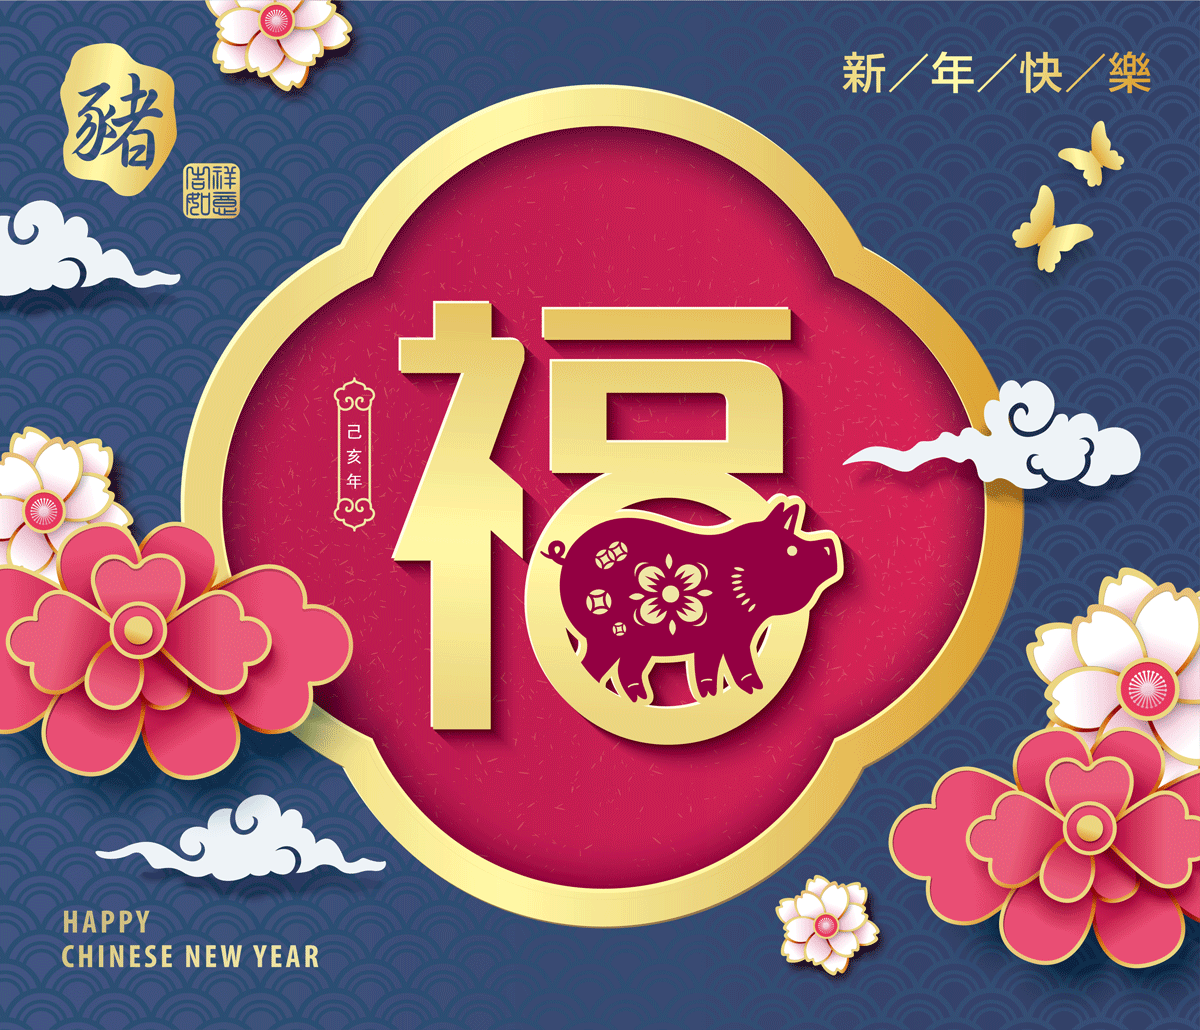 2019年猪年新年元旦海报红包EPS矢量素材 2019 Year of the Pig New Year’s Day Poster Red Packet EPS Vector Material插图10